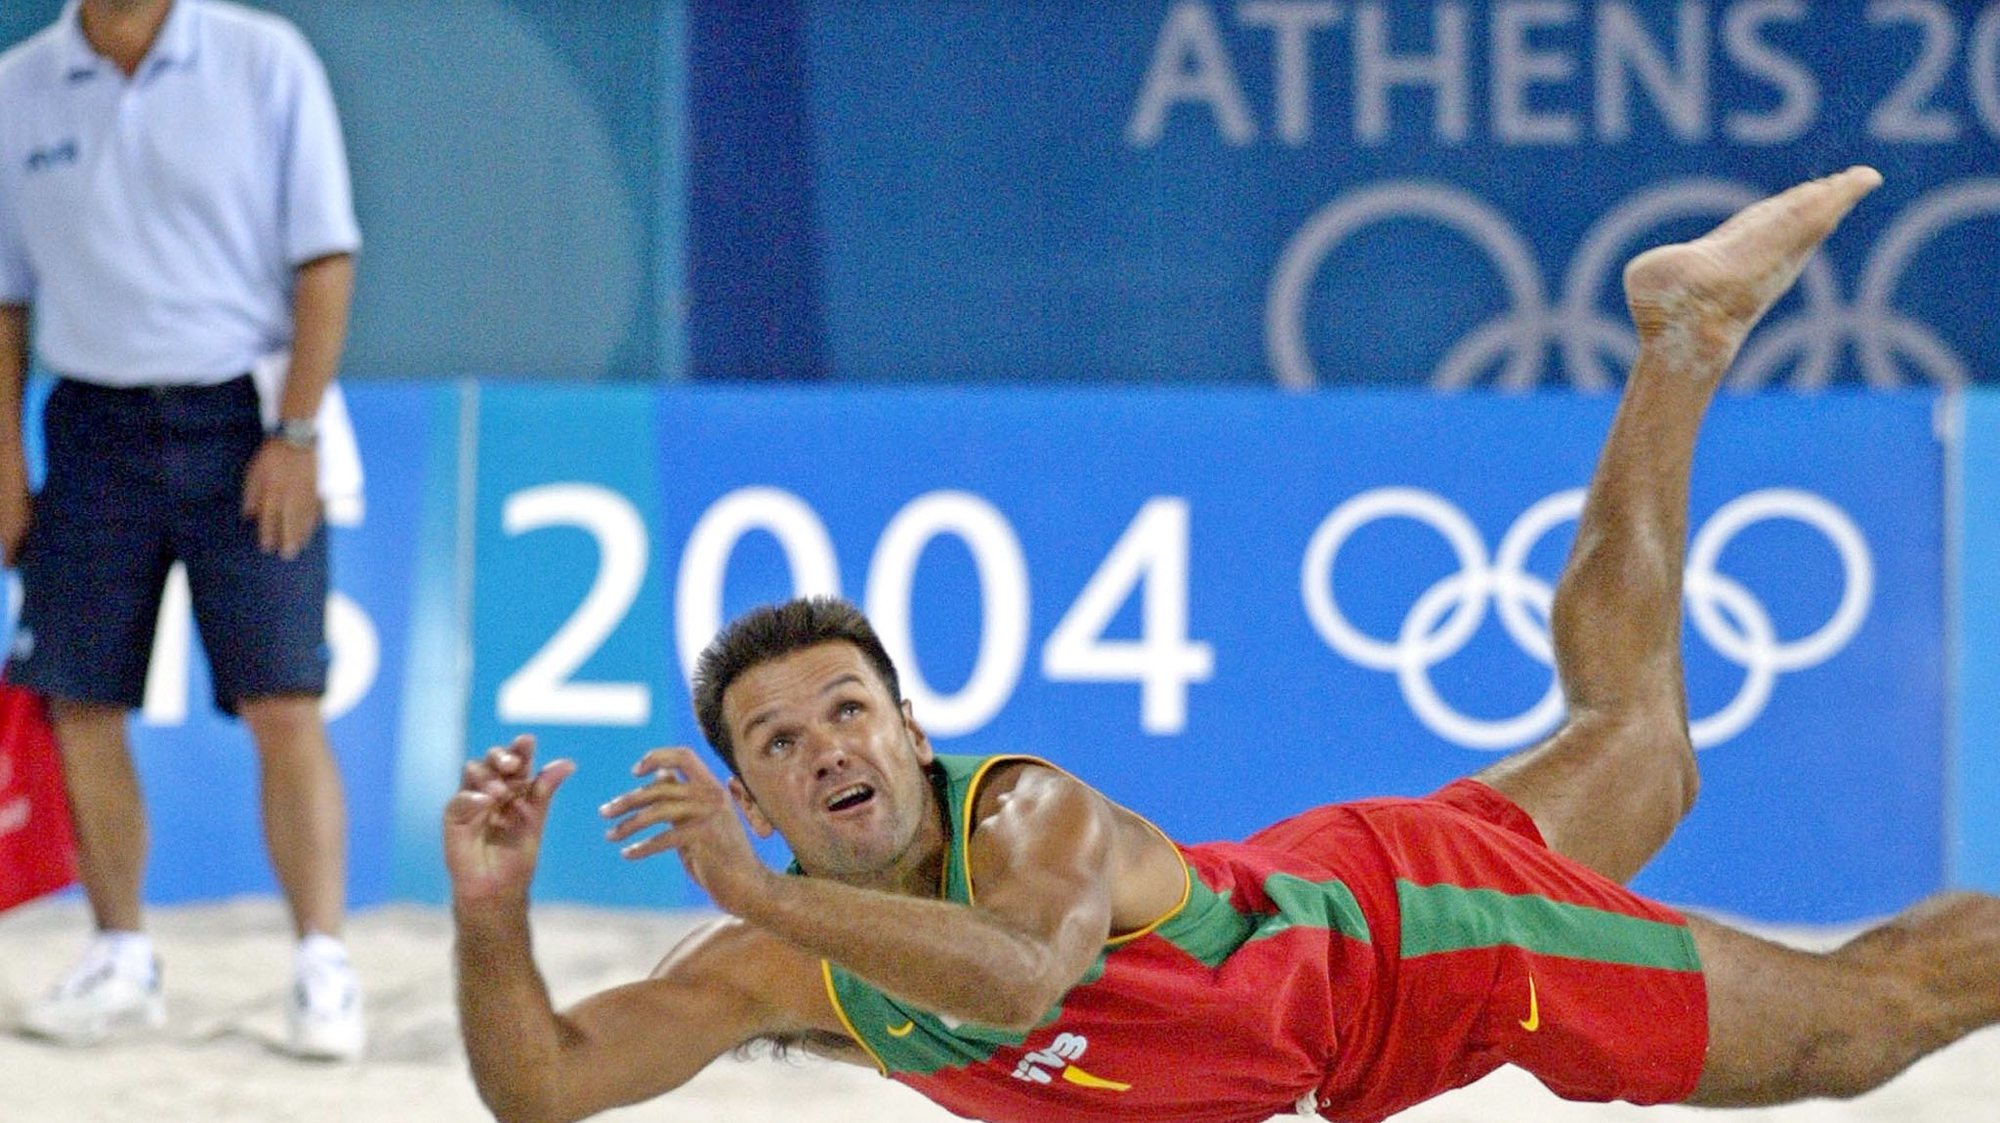 TP14: 20040816: ATENAS, GRECIA: Miguel Maia em accao durante o jogo de Voleibol de Praia da dupla portuguesa, contra a equipa grega, hoje a noite no Centro Olimpico de Voleibol de Praia em Faliro, Atenas. TIAGO PETINGA/LUSA